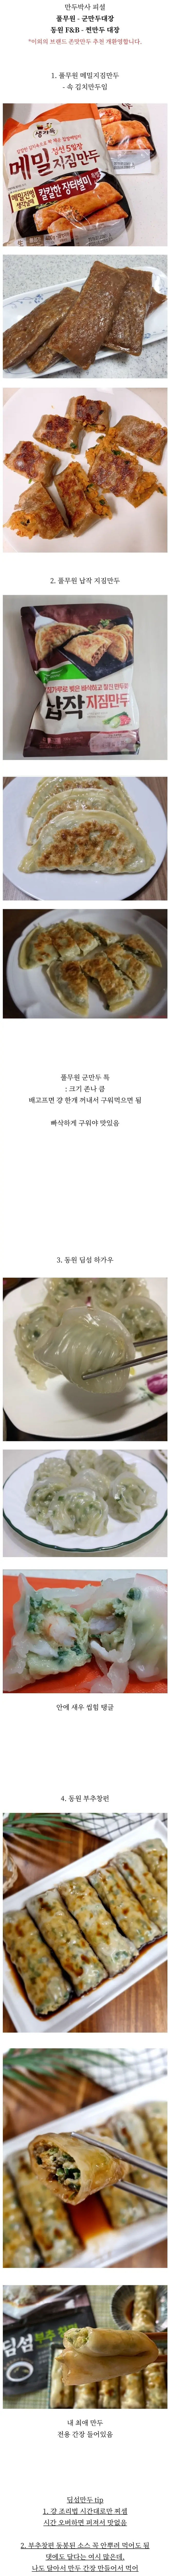 만두박사가 생각하는 냉동 만두 4대장 | mbong.kr 엠봉